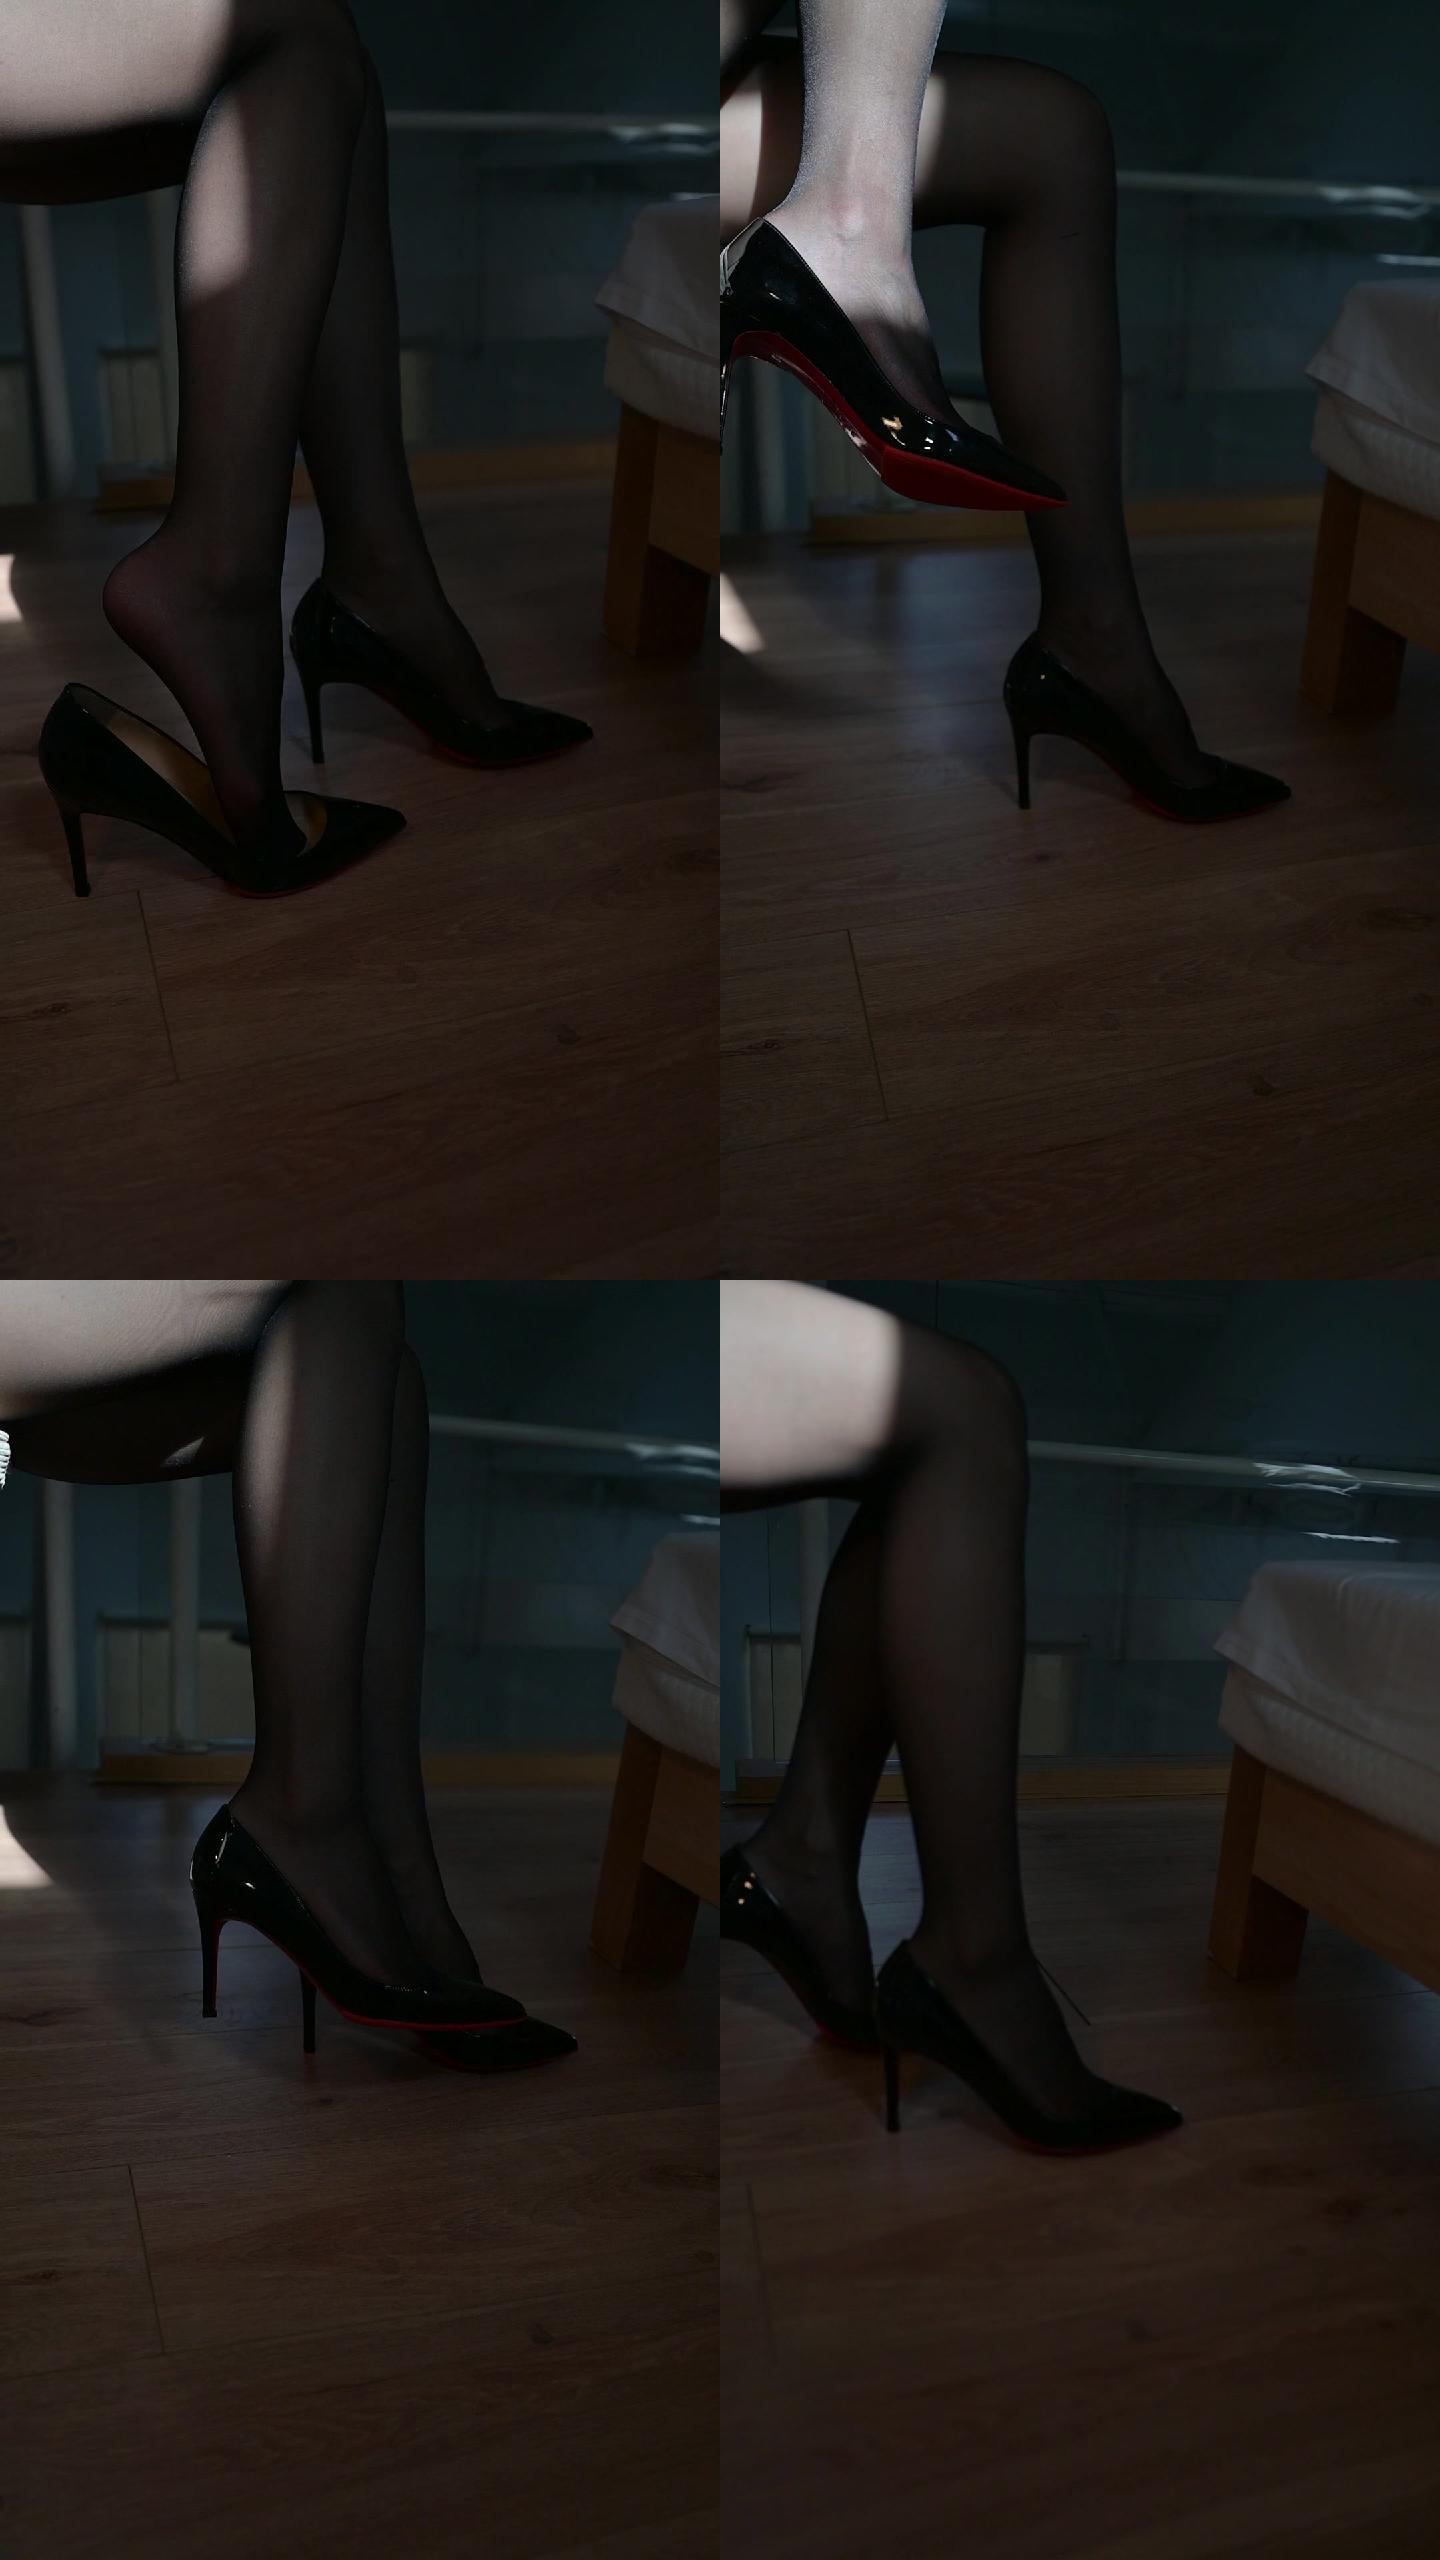 美女模特穿搭黑色丝袜高跟鞋展示